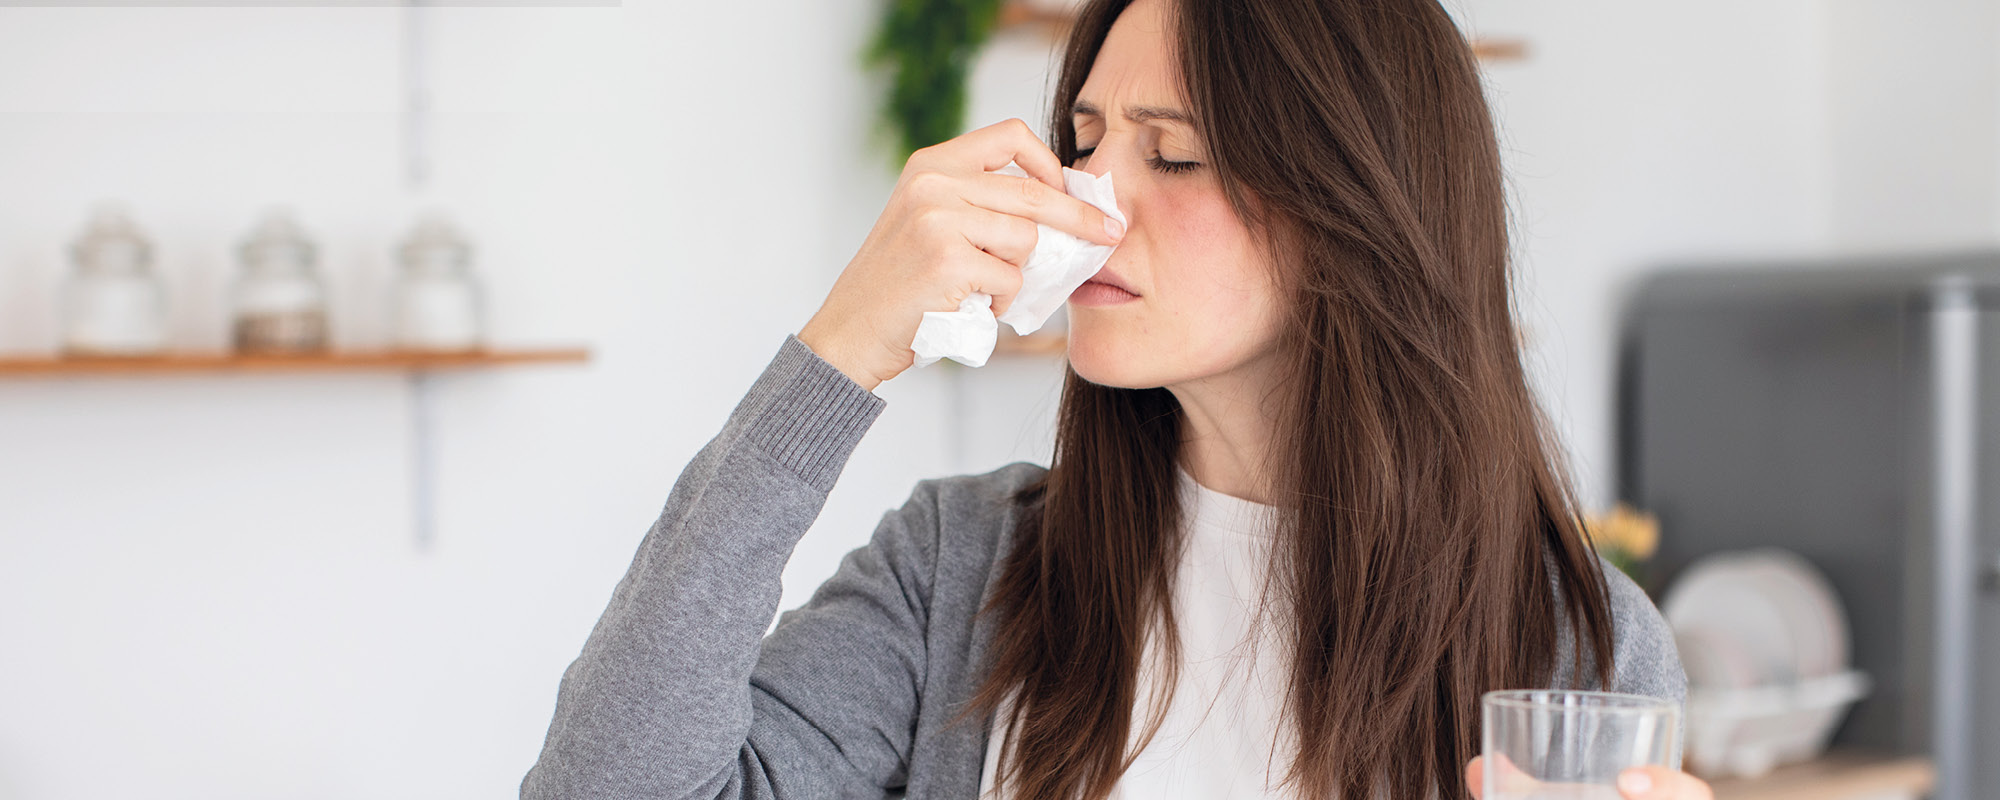 Staub-Allergie: Wie Du mit richtigem Staubwischen Deine Beschwerden linderst